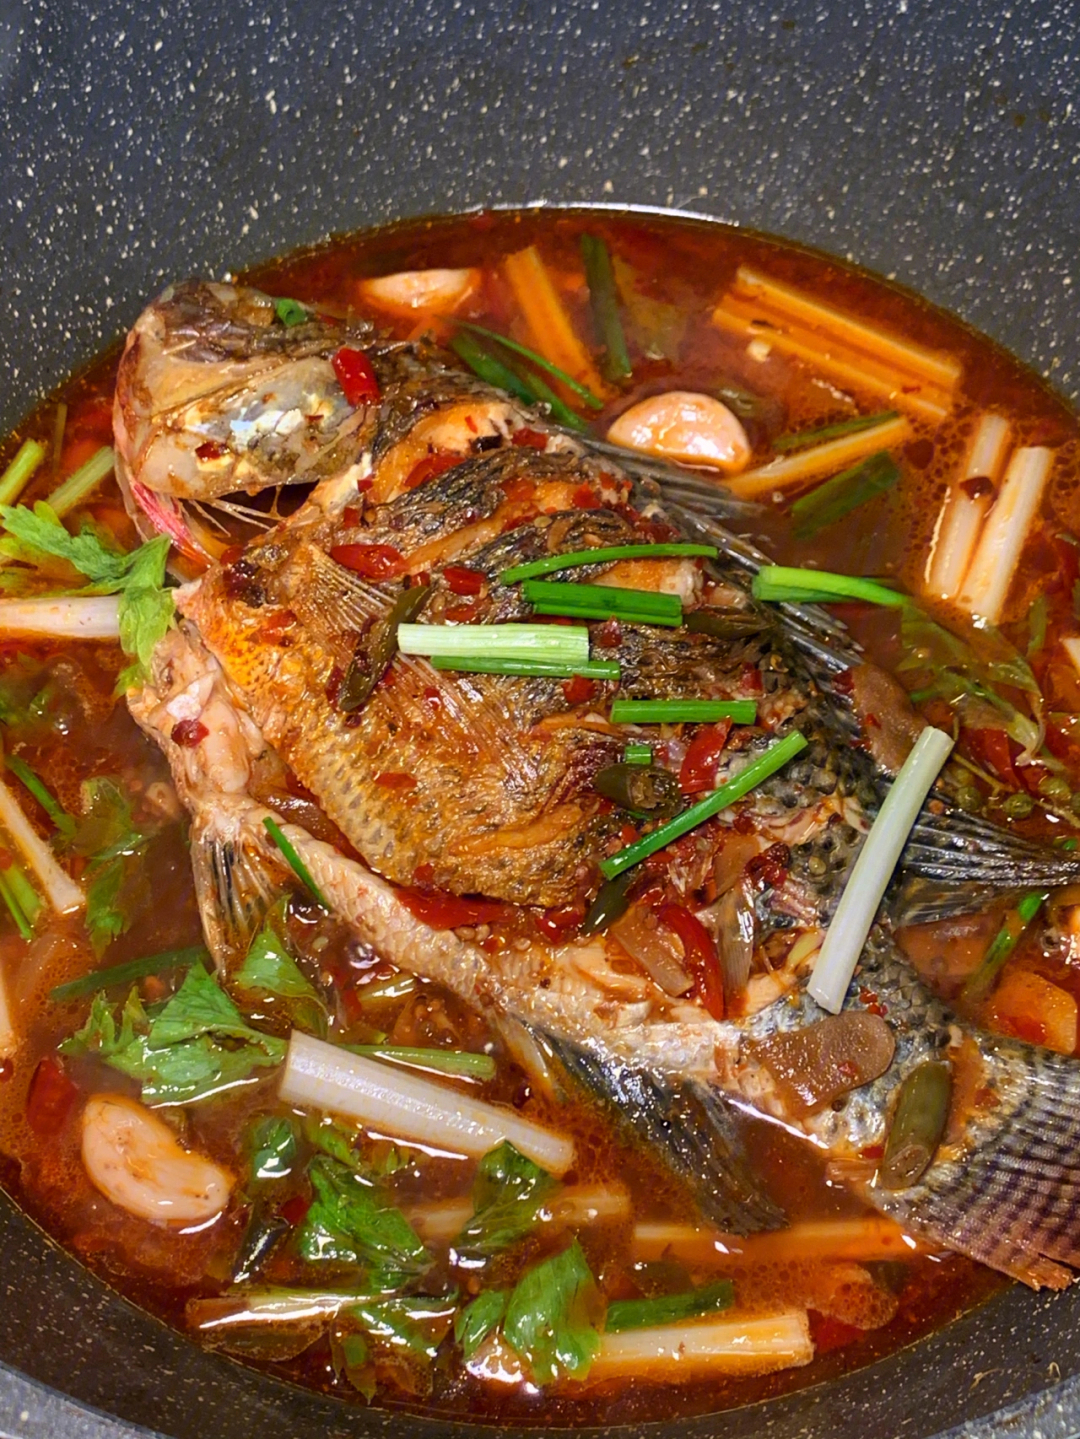 罗非鱼一条 洋嘉凭火锅底料 芹菜 少量泡椒做法:95罗非鱼煎至两面